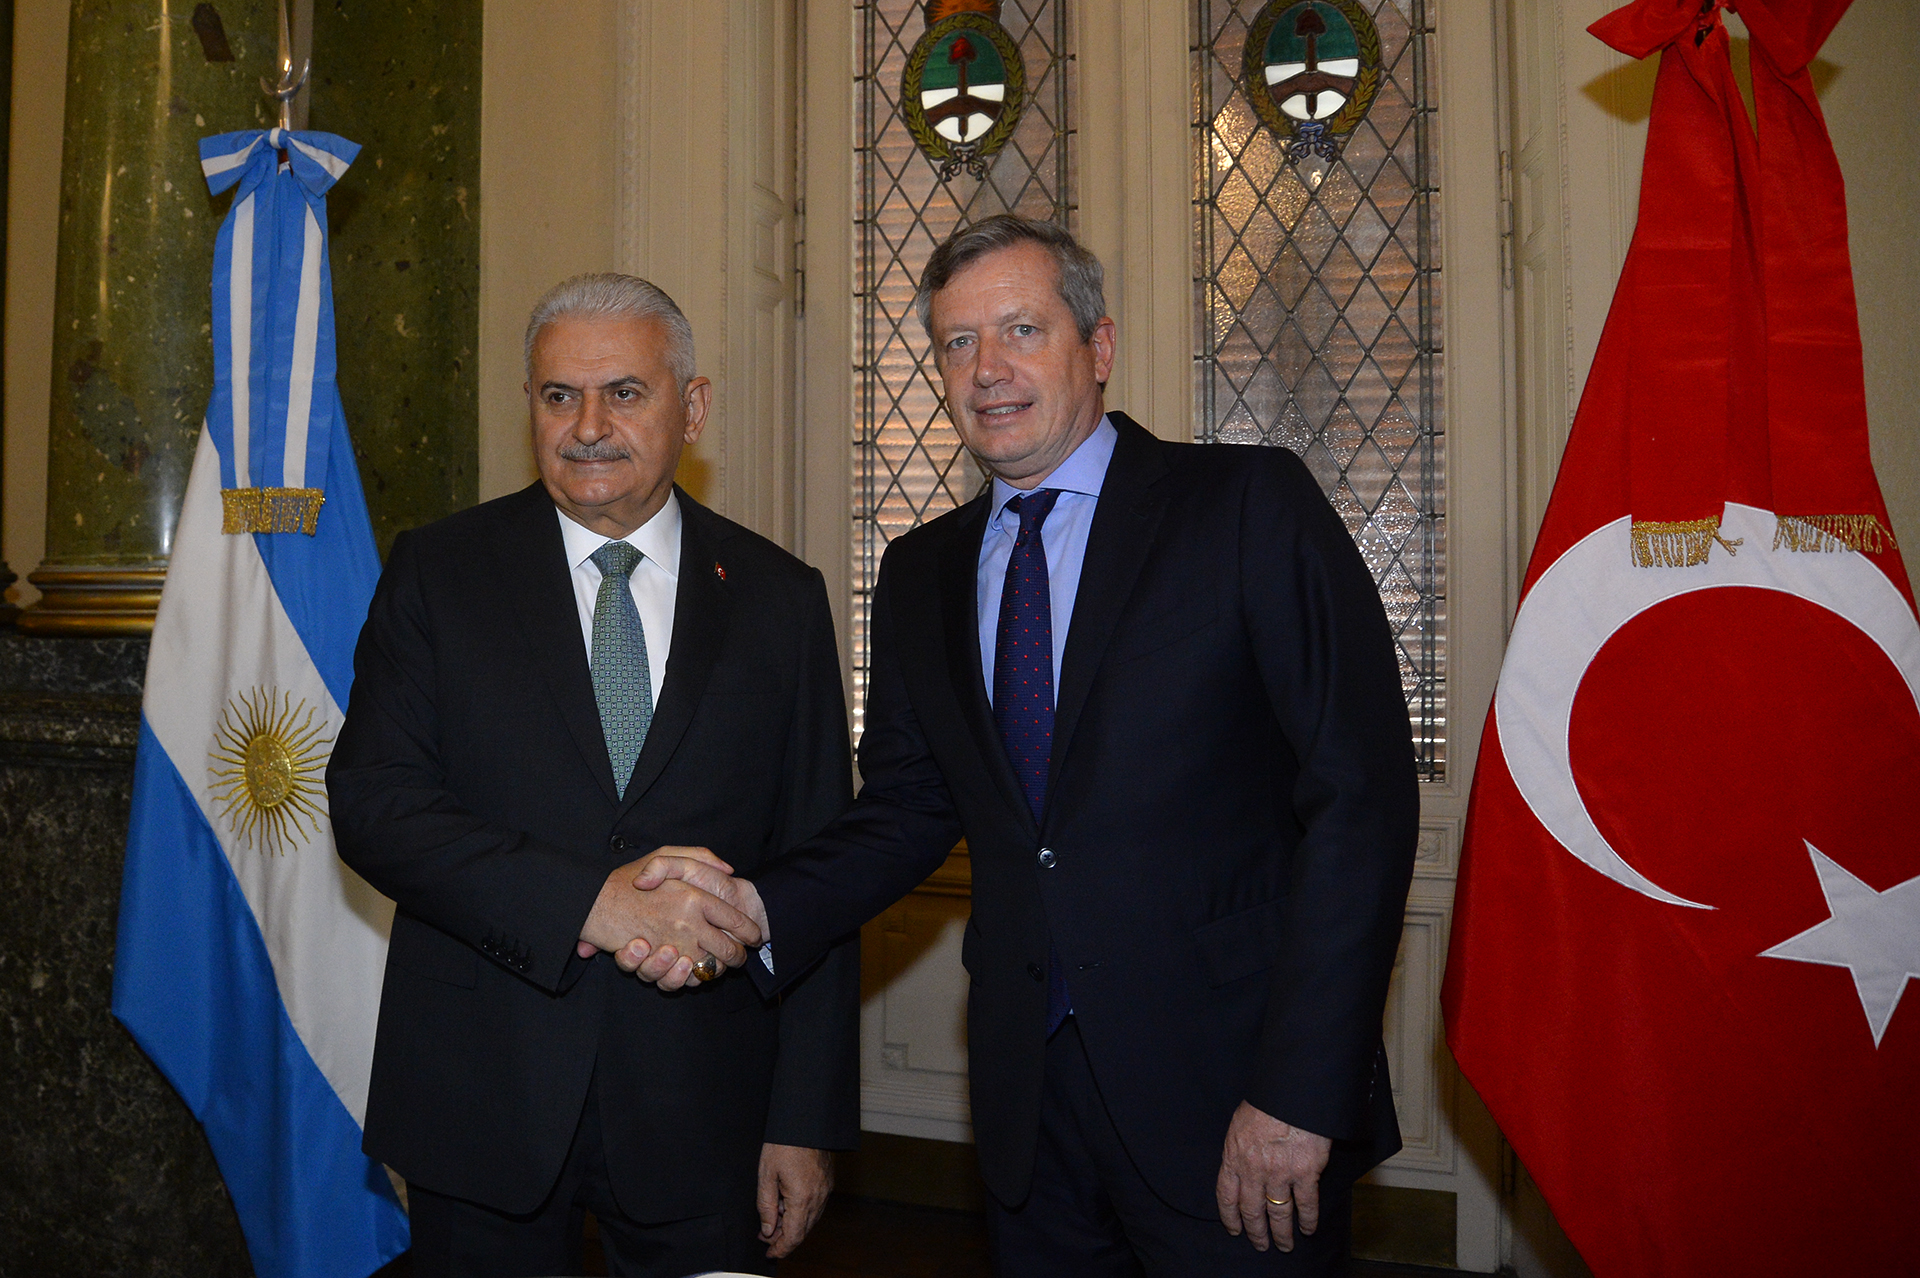 El Presidente de la HCDN se reunió con su par de la Gran Asamblea Turca